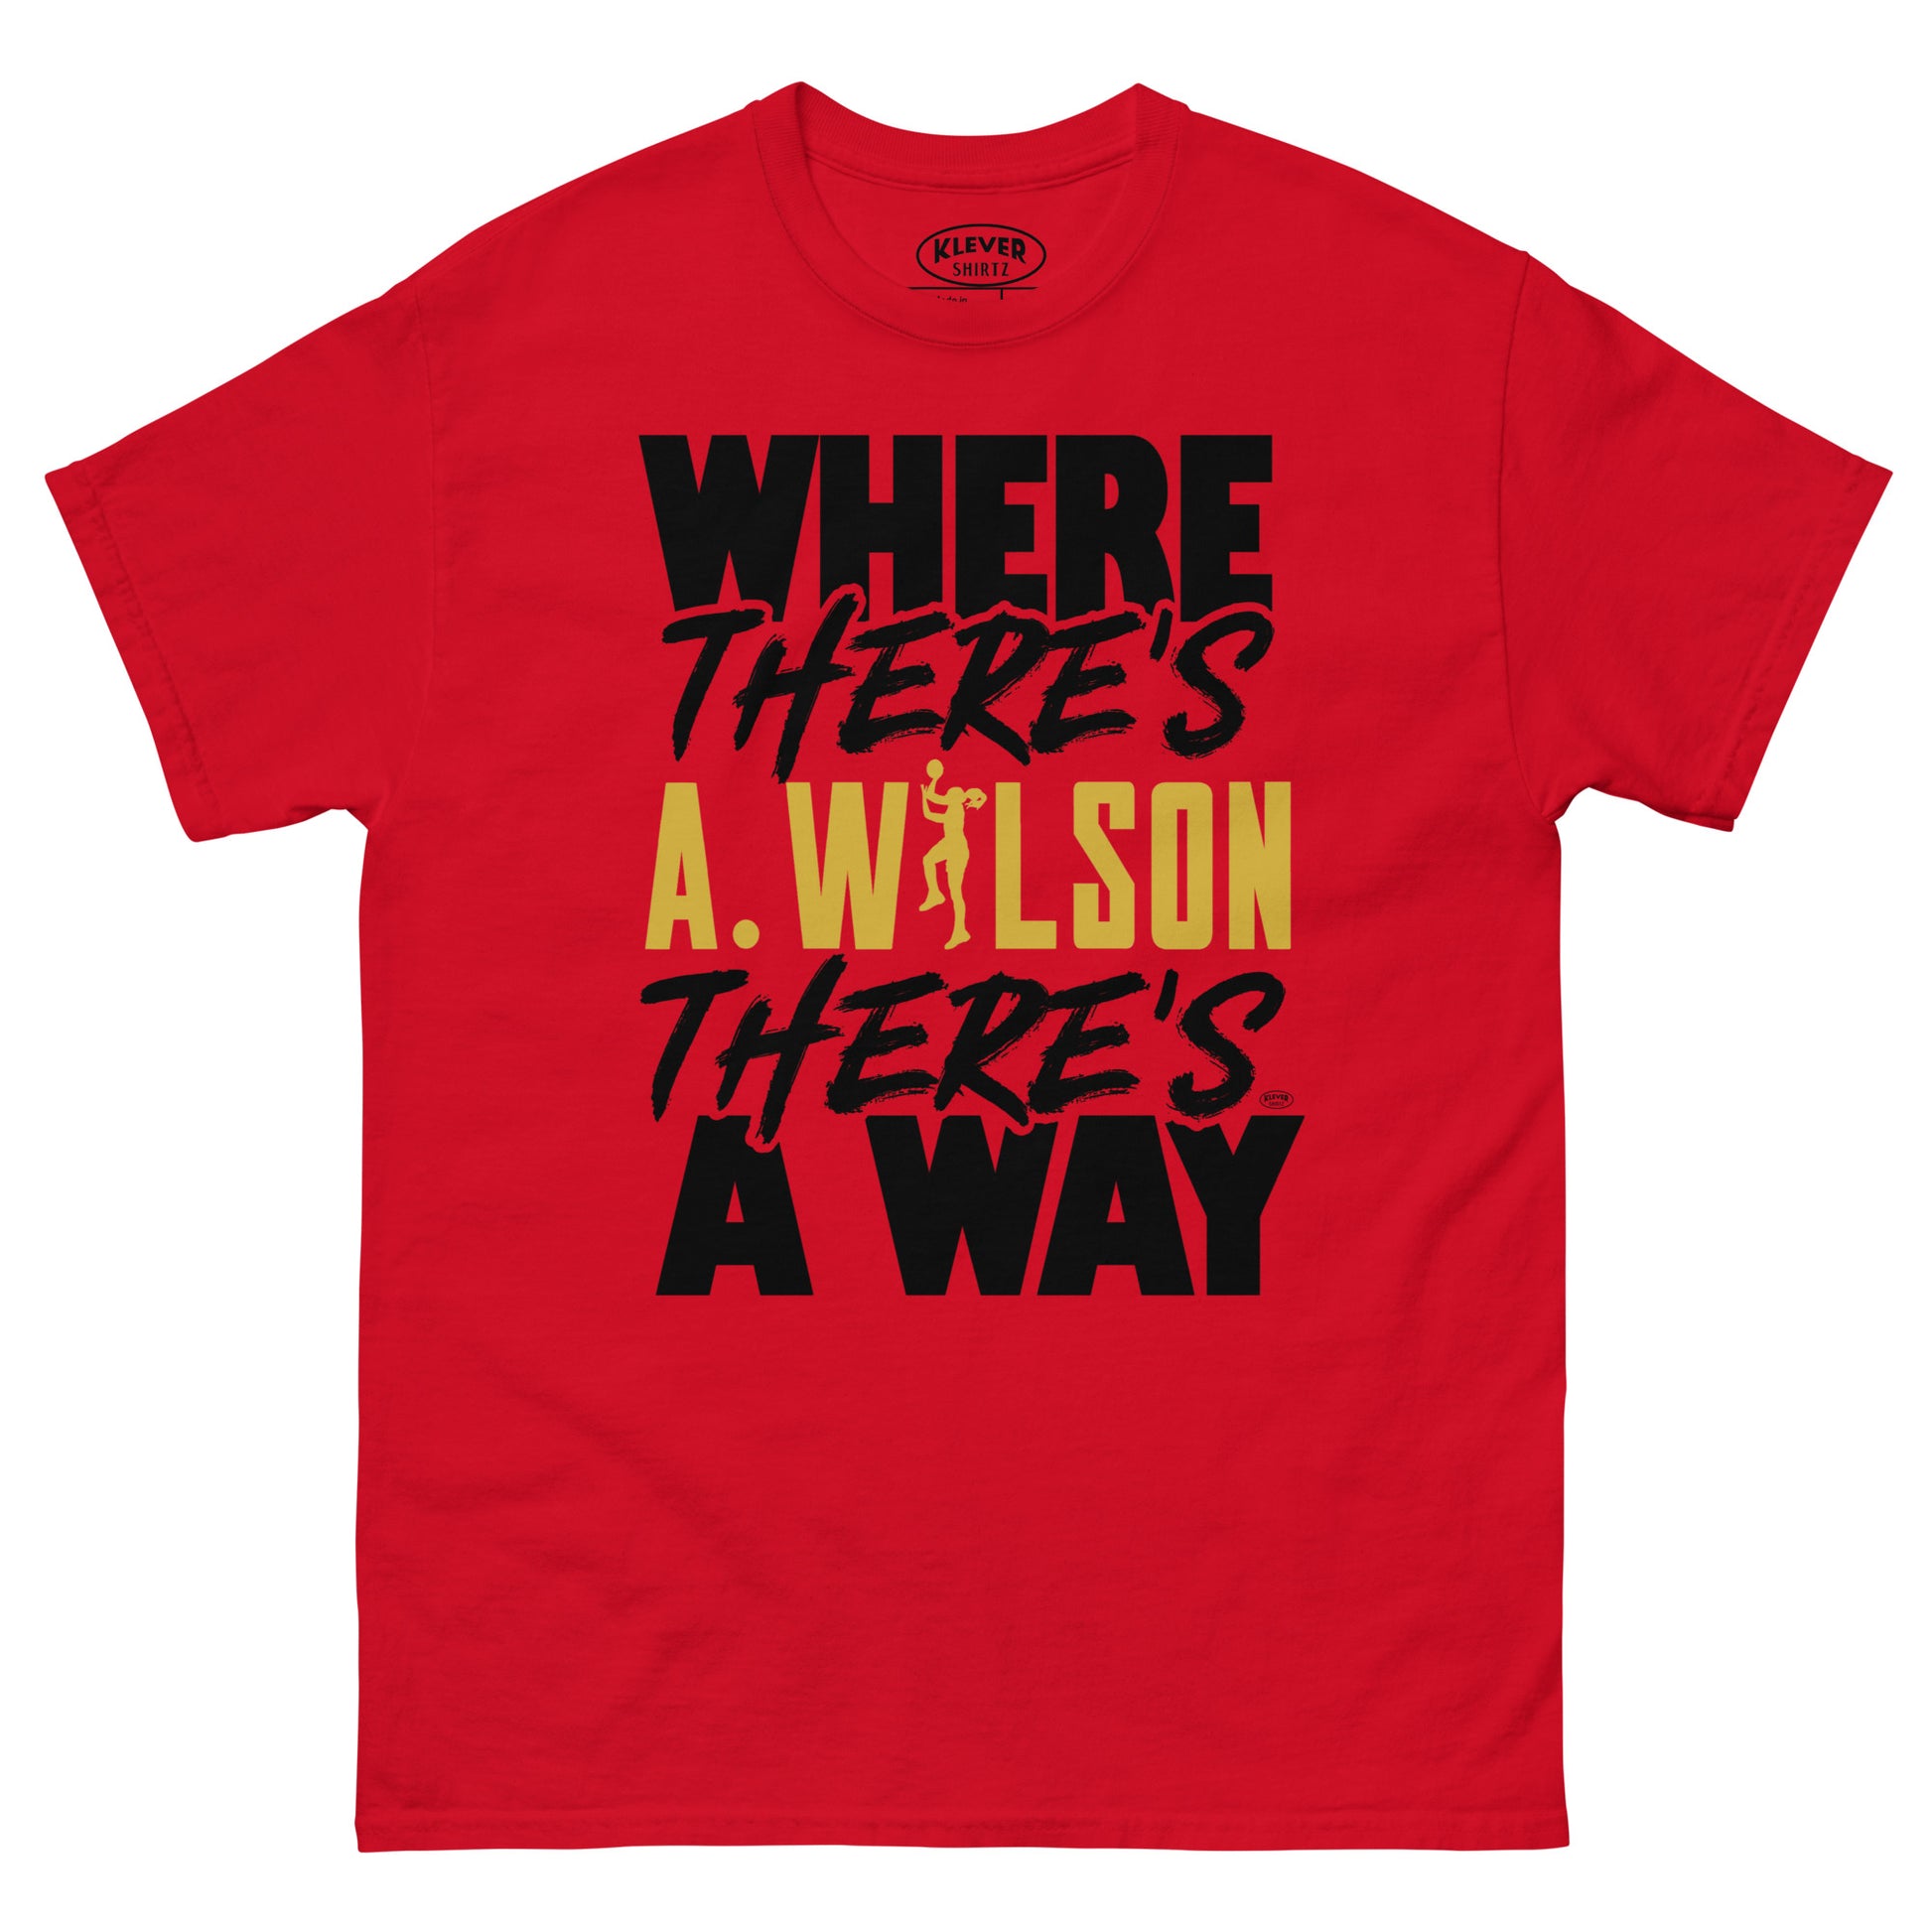 A. WILSON - Klever Shirtz